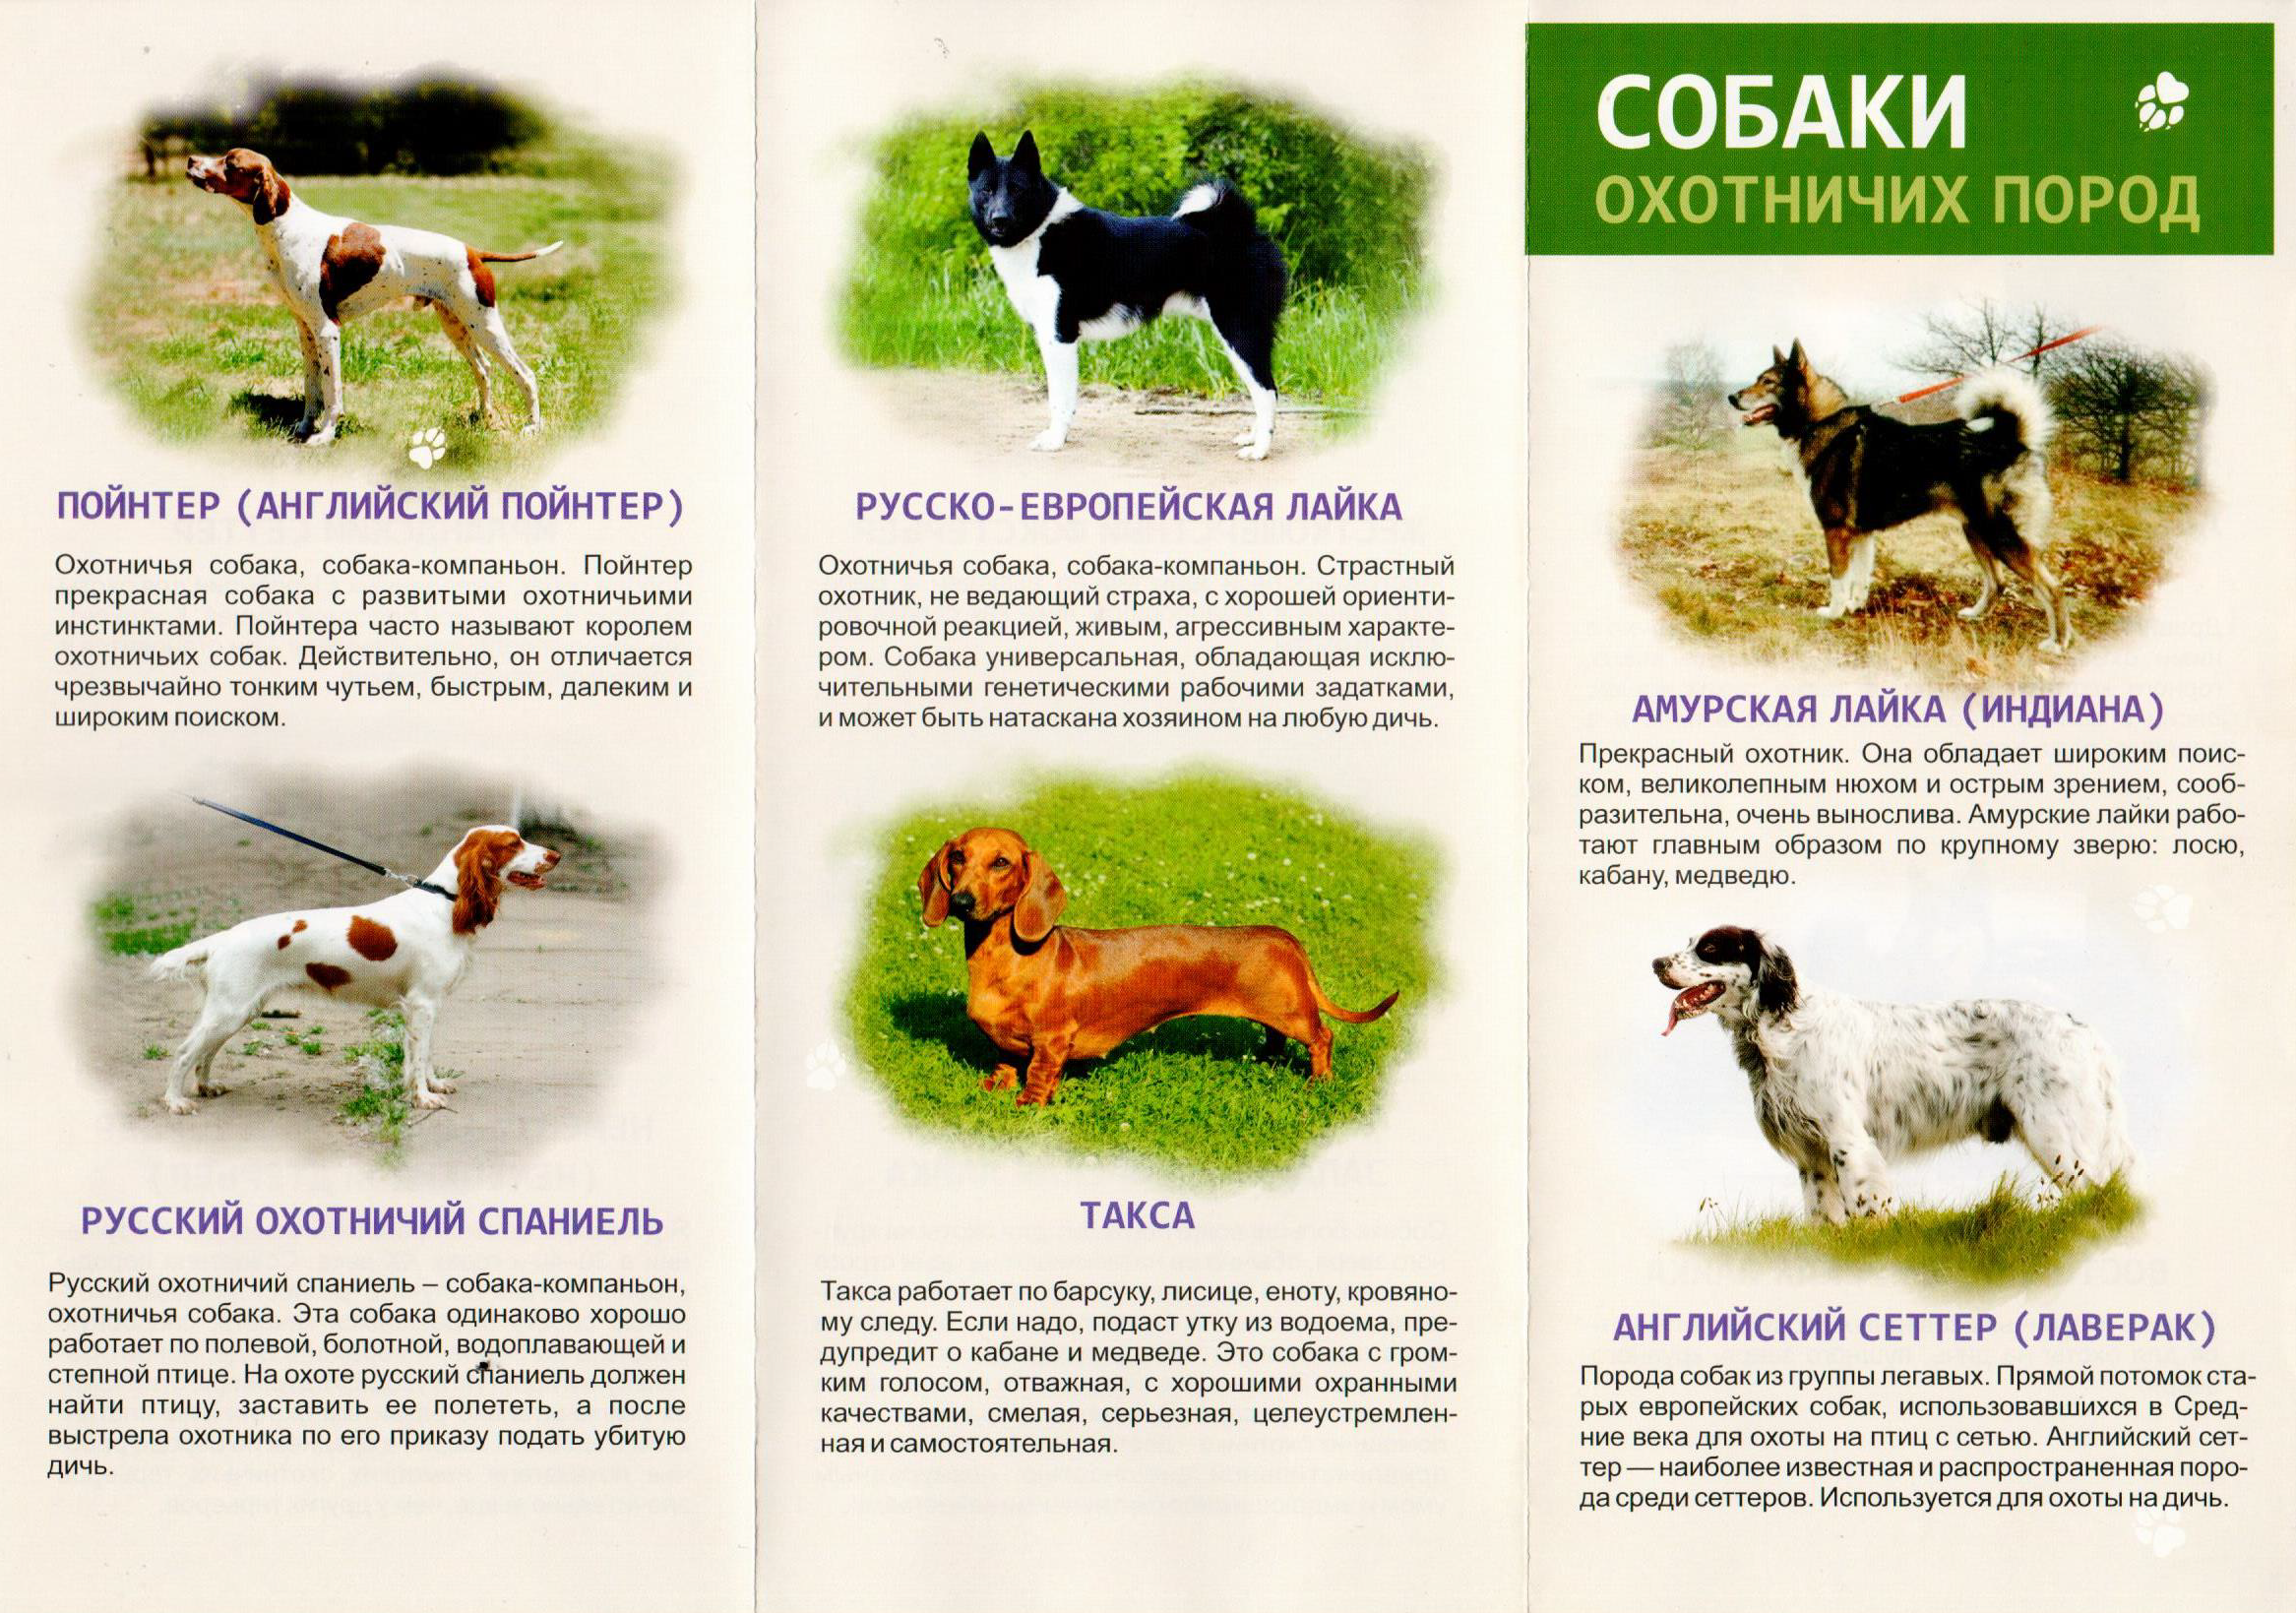 Статья: Условия для выведения полноценной охотничьей собаки